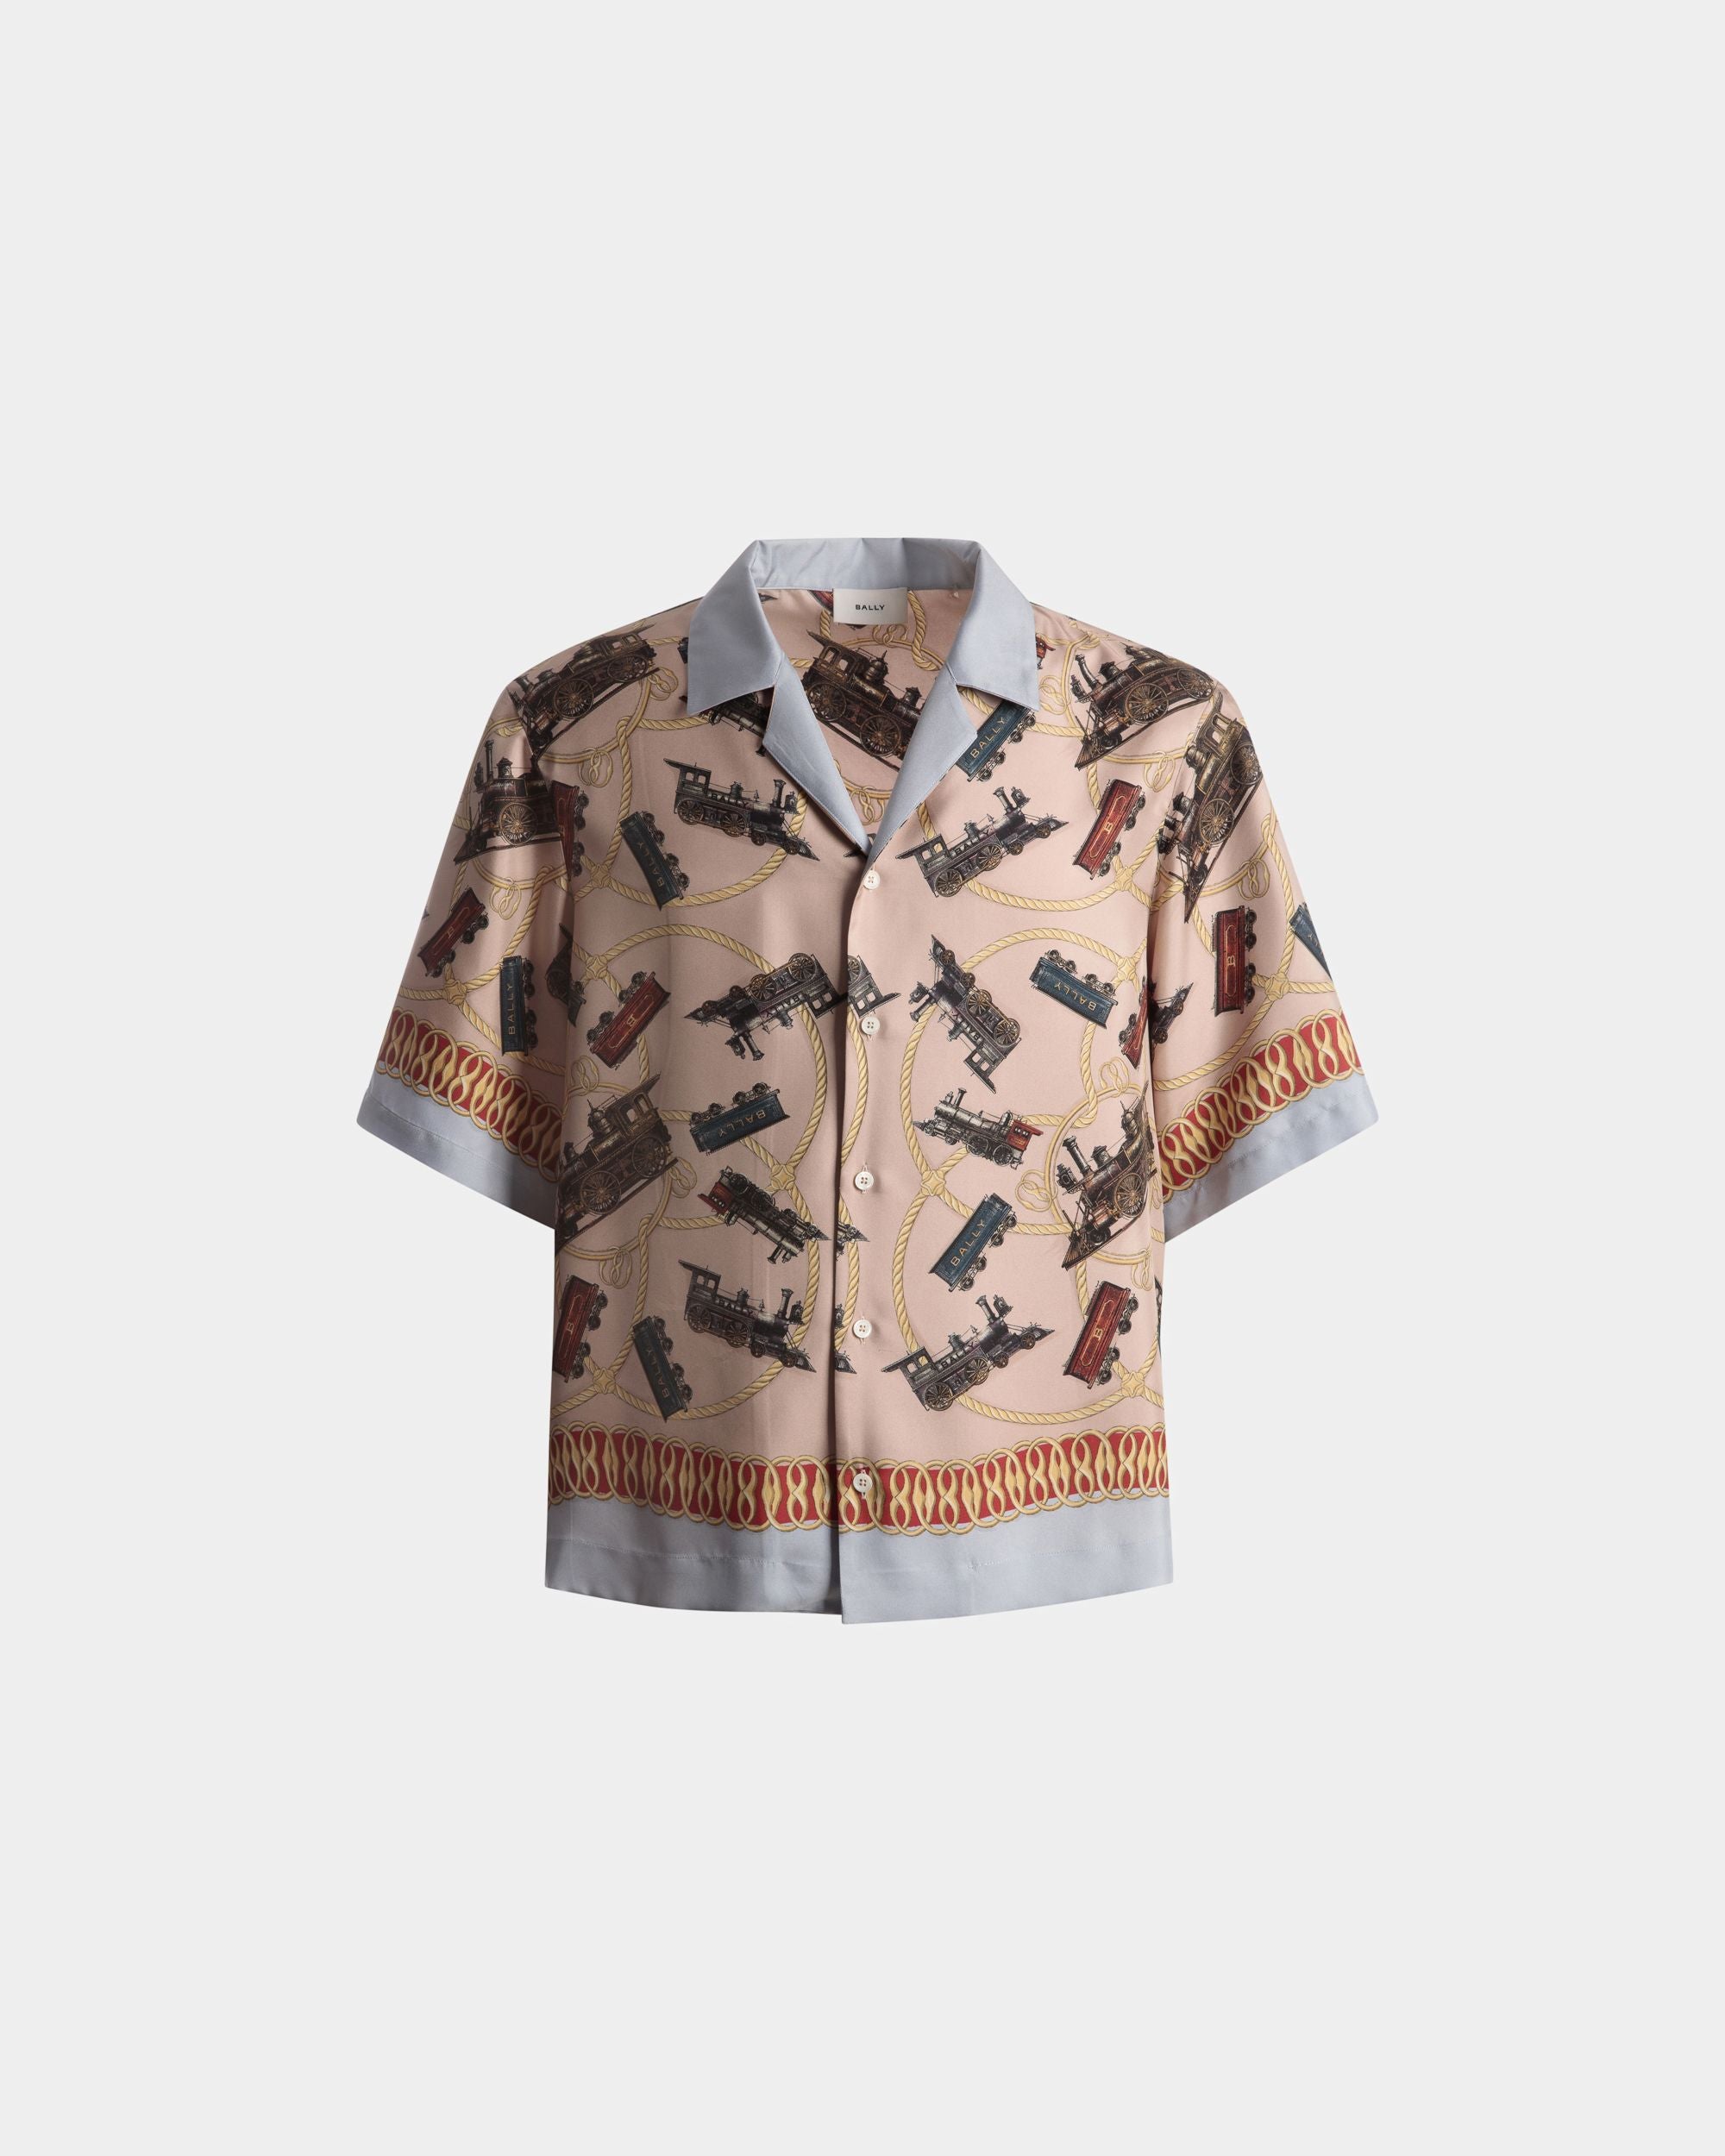 Train Print Shirt | Men's Shirt | Multicolor Silk | Bally | Still Life Front